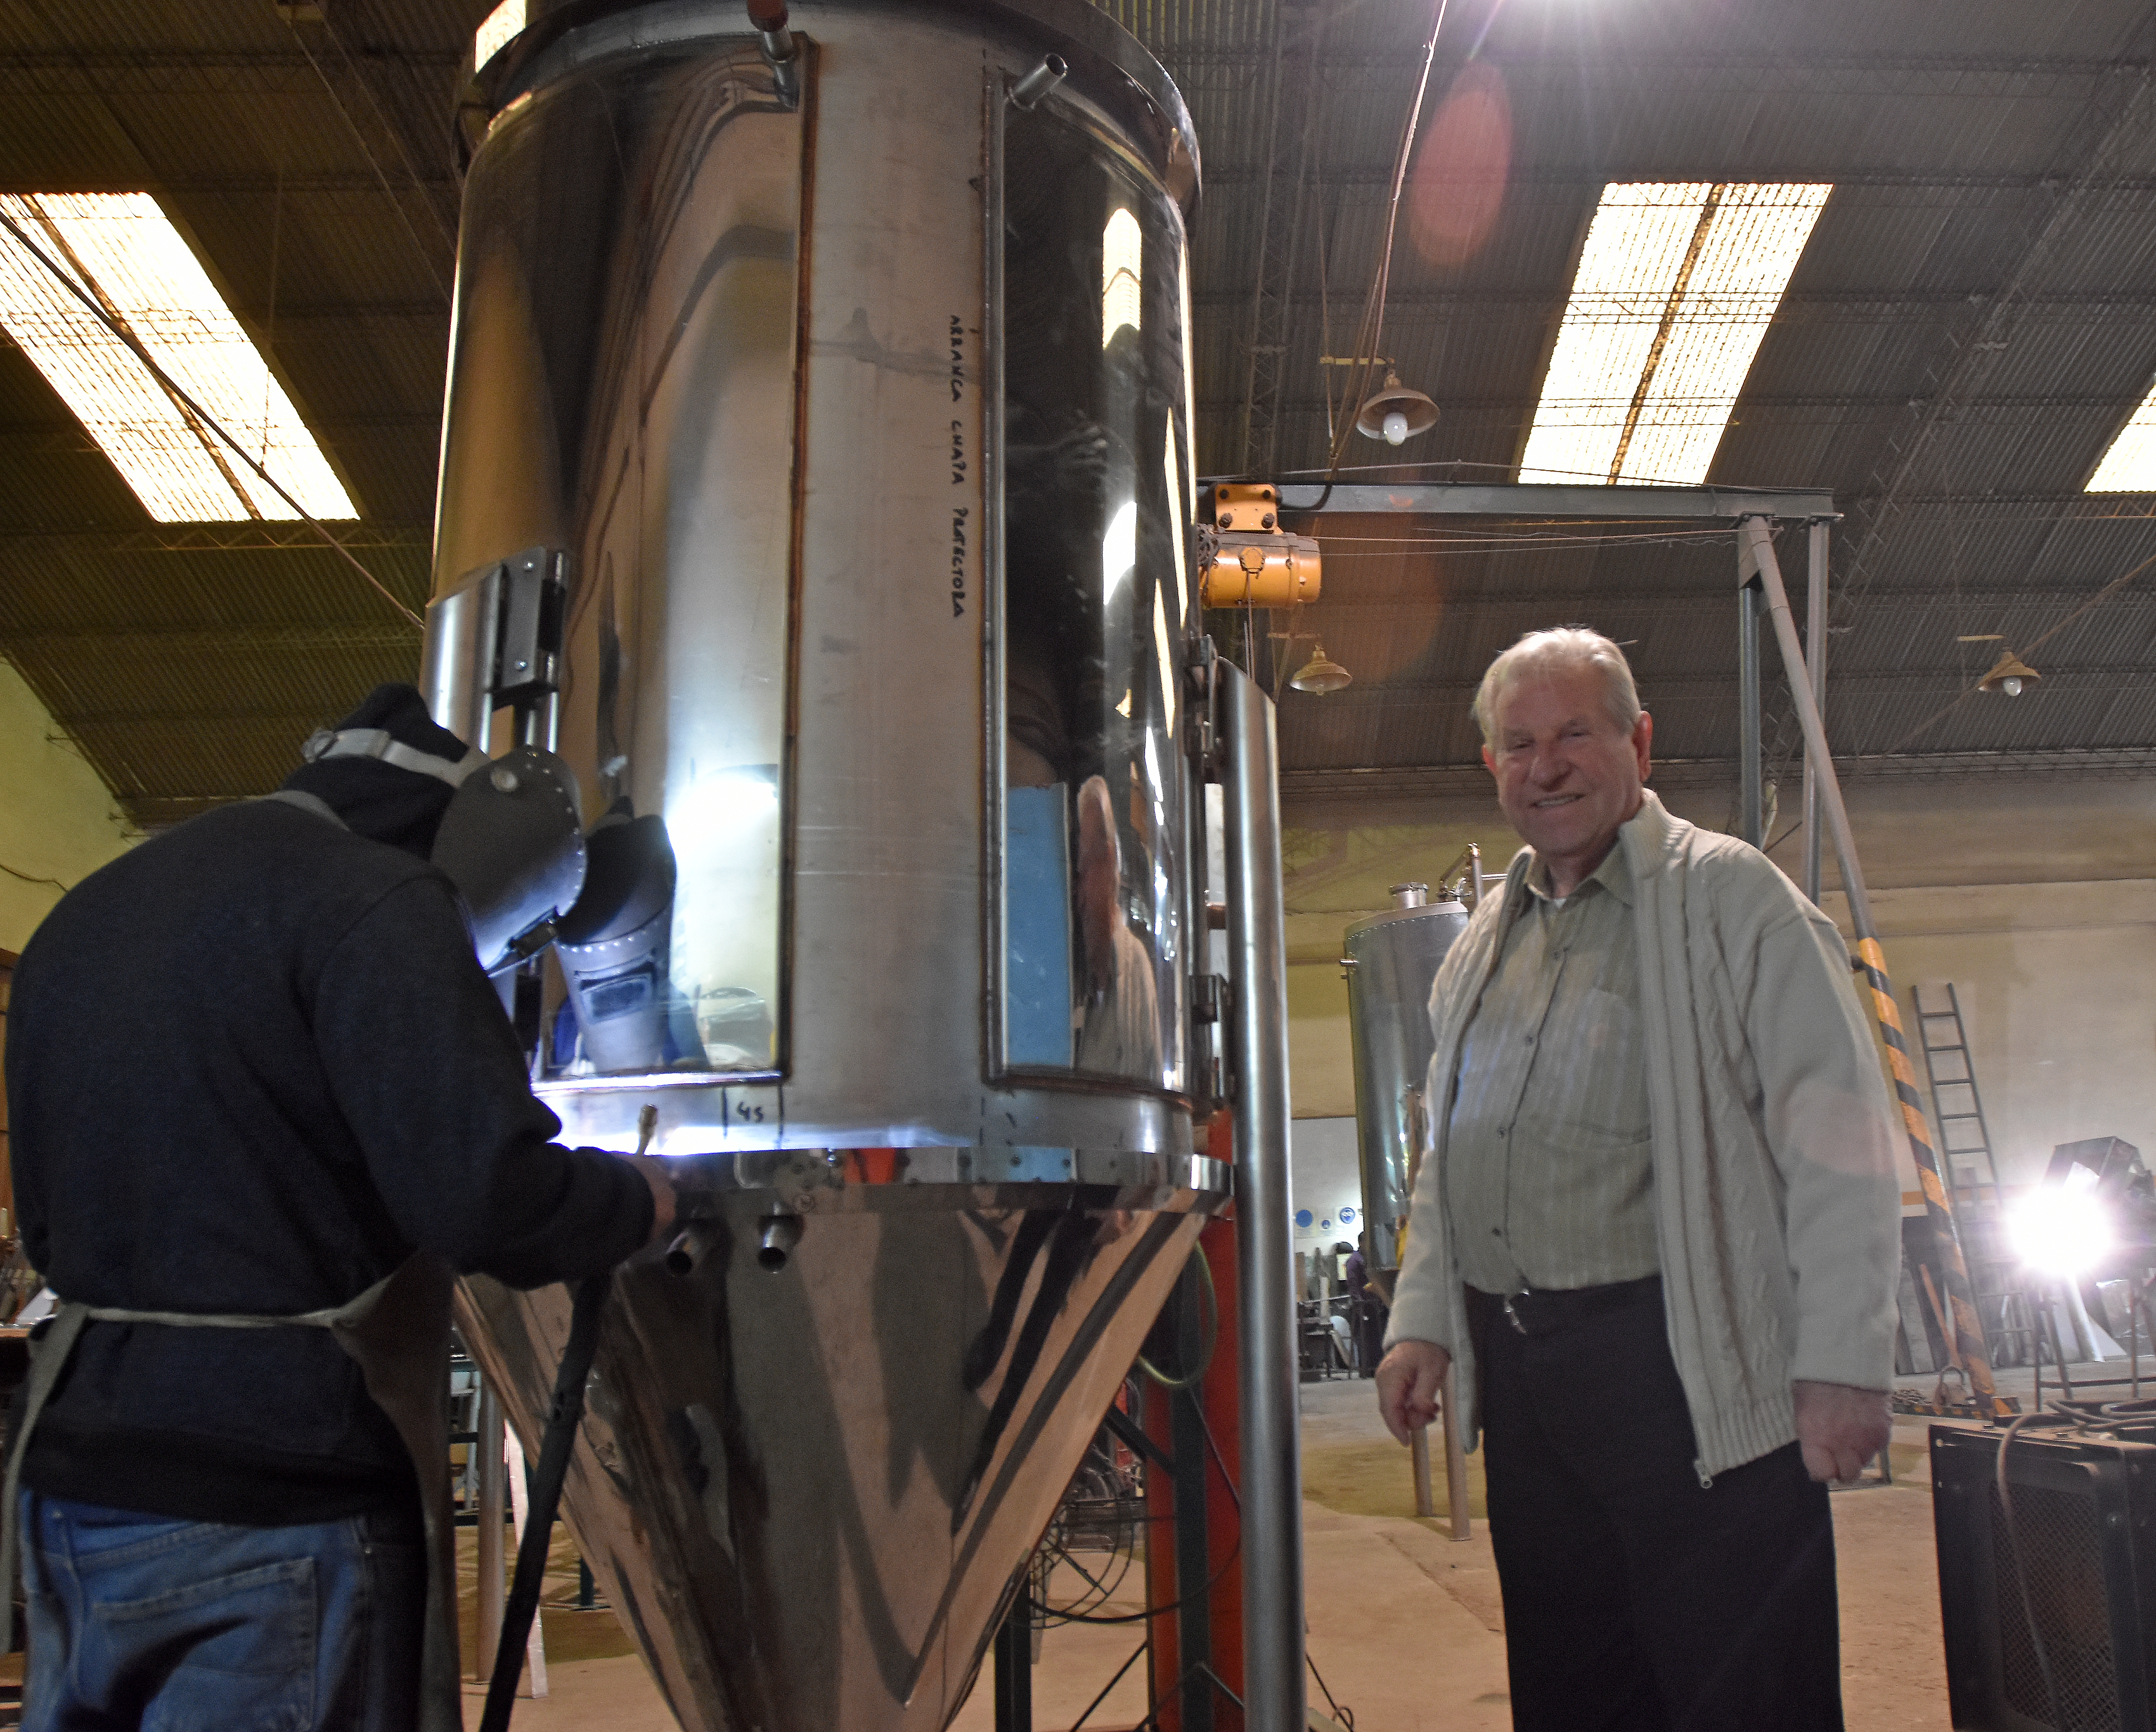 Beinaravicius en su fábrica junto a uno de los tanques de acero inoxidable para hacer cerveza que encargó una empresa regional.